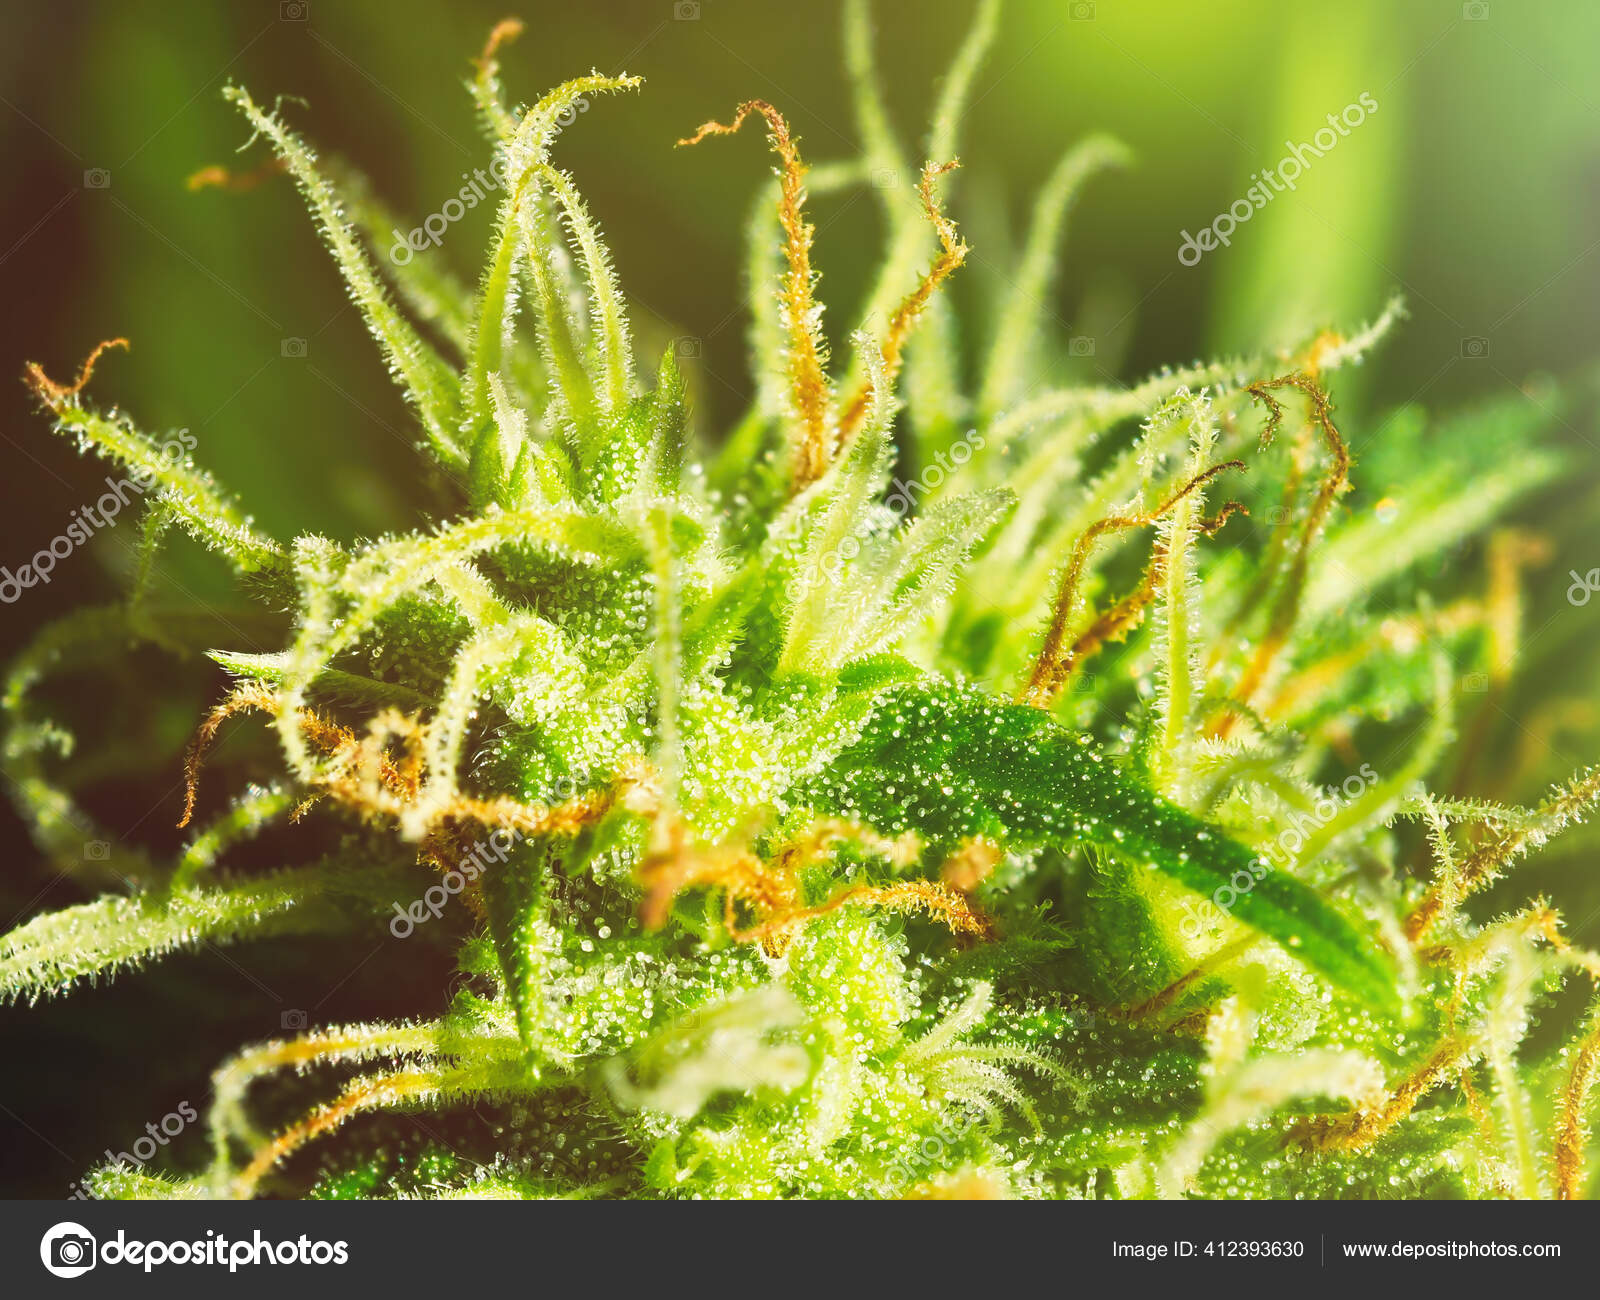 成熟的大麻植物宏观北极光开花的女性大麻花蕾大的科拉花有明显的白色雌蕊毛和琥珀色三叶草被阳光照得发亮的大麻四后续行动